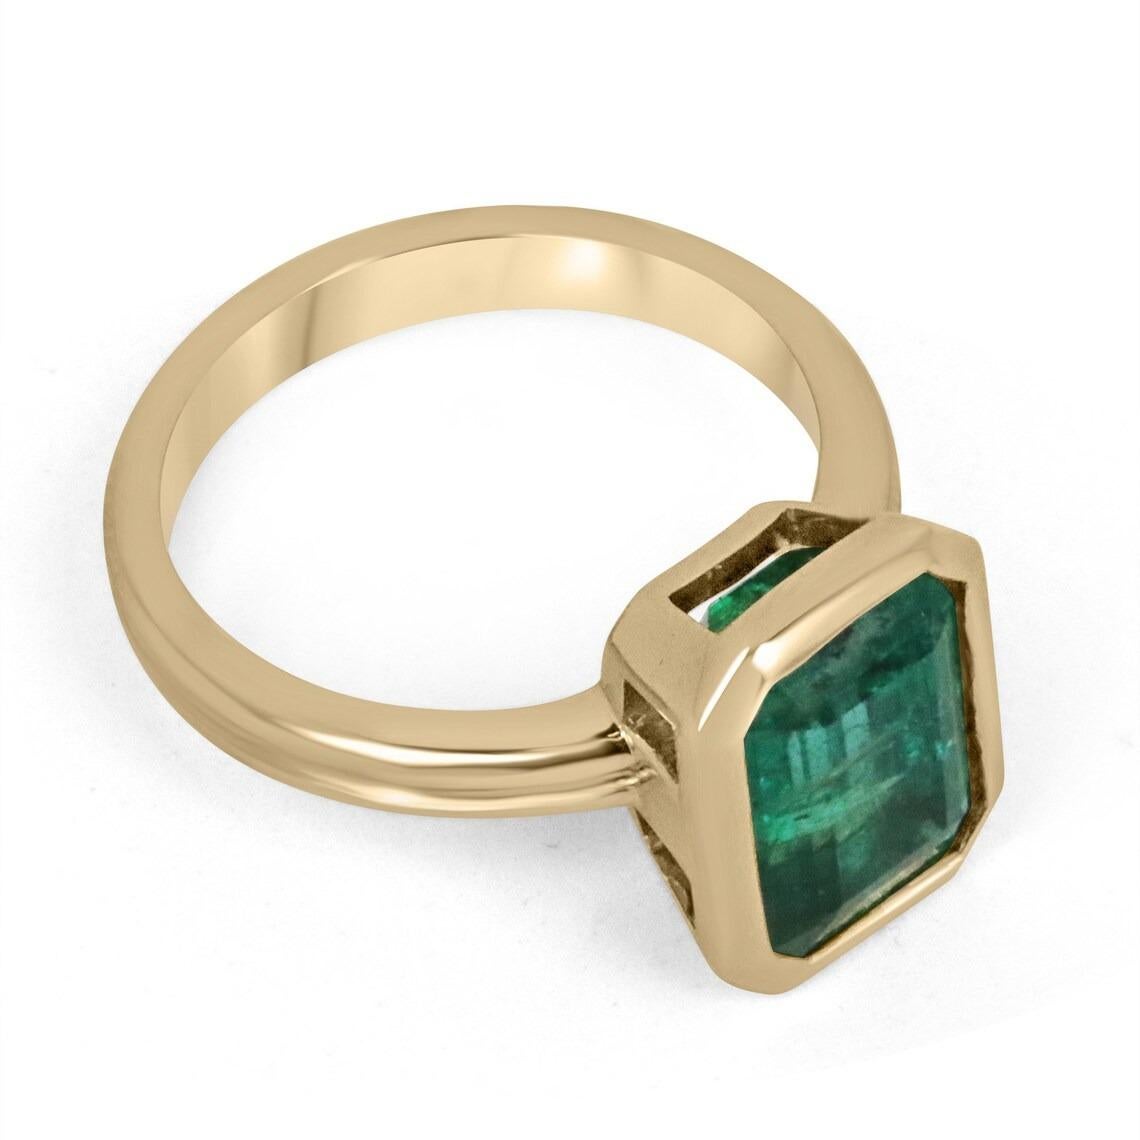 Gezeigt wird ein atemberaubender Smaragd Solitär Verlobungsring oder rechten Hand Ring in 14K Gelbgold. Dieser wunderschöne Solitärring trägt einen geschätzten 4,45-karätigen Smaragd in einer Lünettenfassung. Dieser vollständig facettierte Edelstein